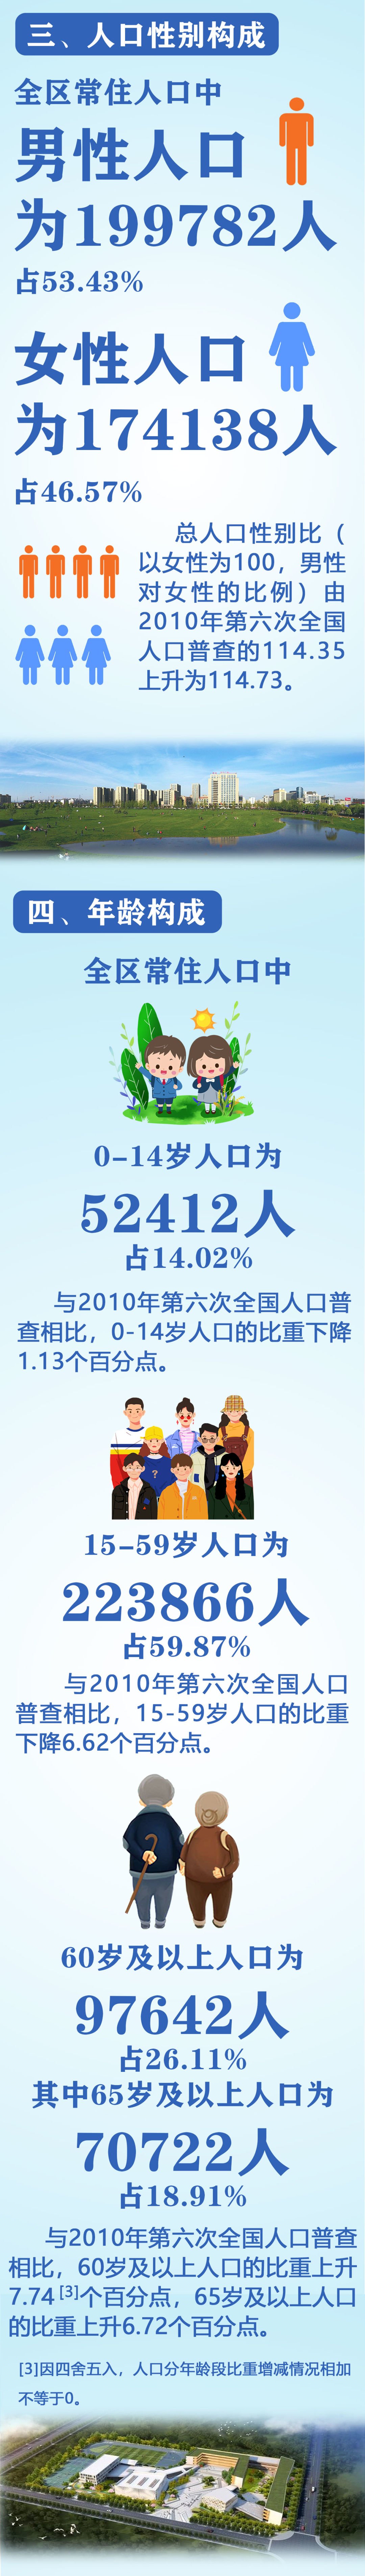 373920人！衢江区第七次人口普查主要数据公布